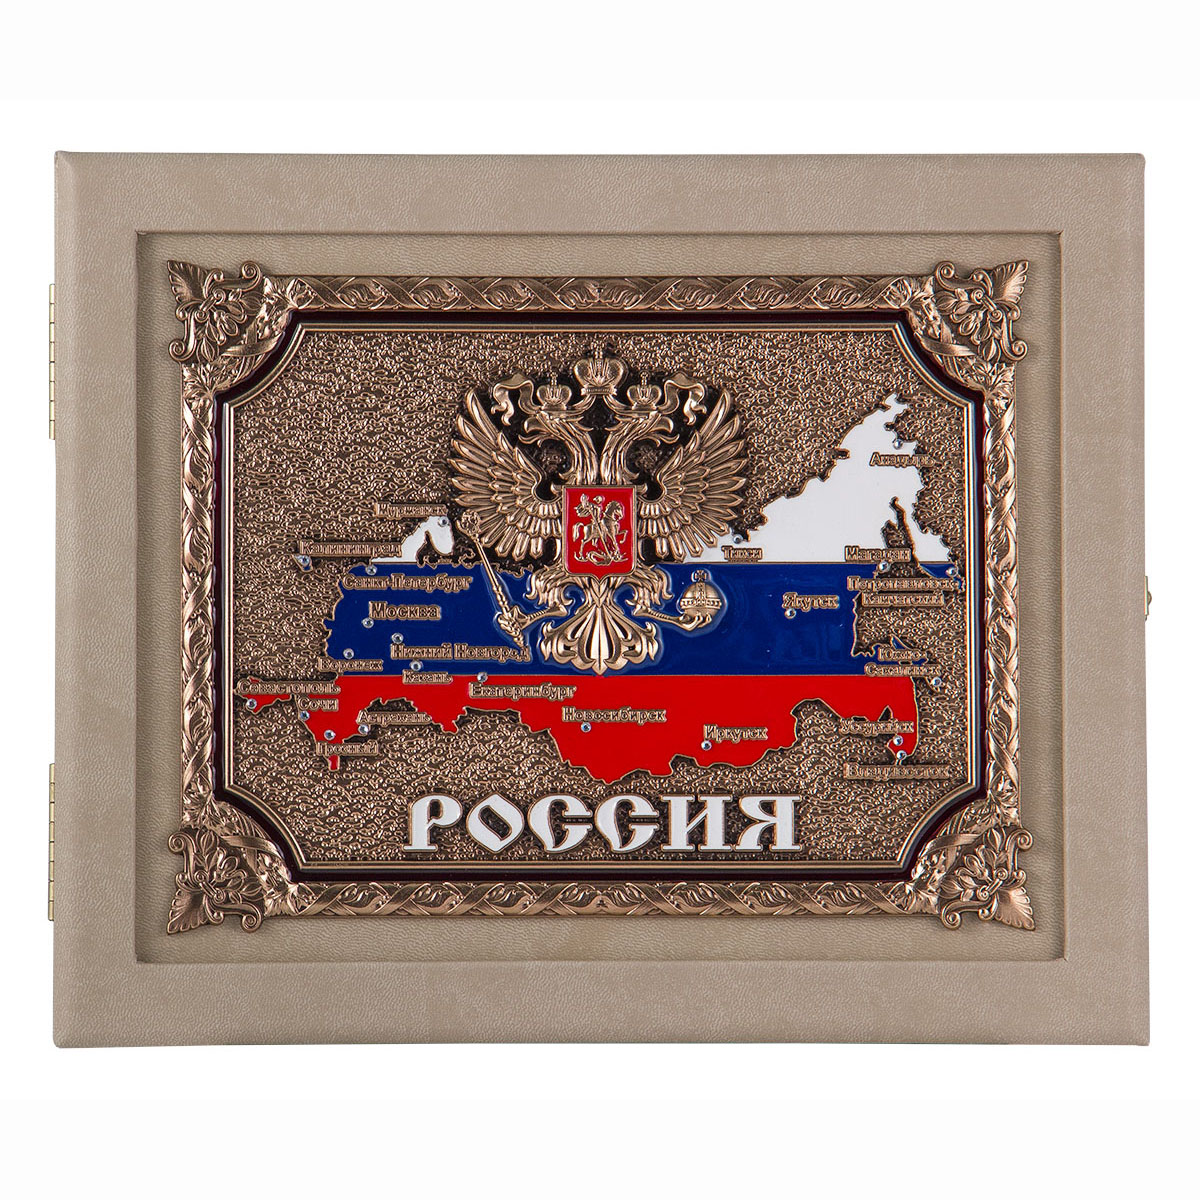 Ключница "Россия" - кожа, цвет слоновая кость (бежевый) 27х22х7 см, шильд объемный медный